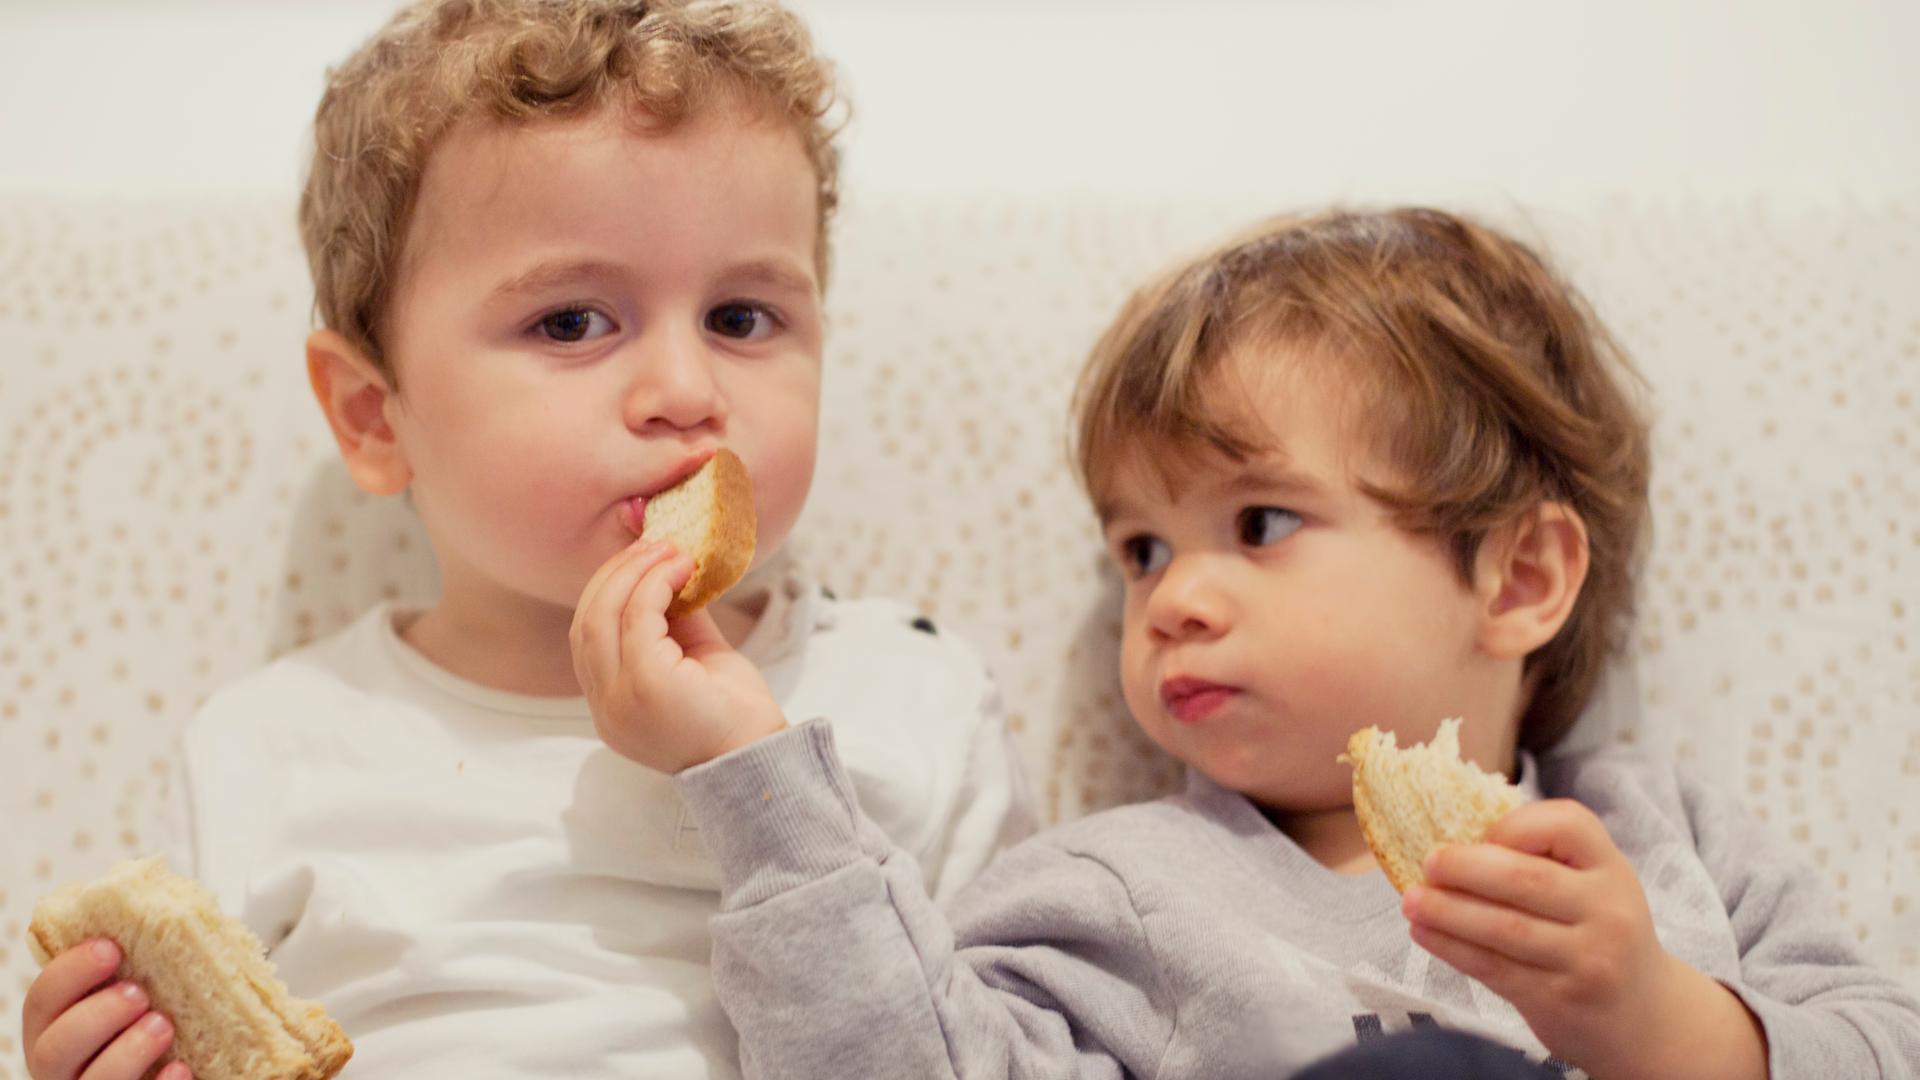 Zwei kleine Kinder teilen Brot.